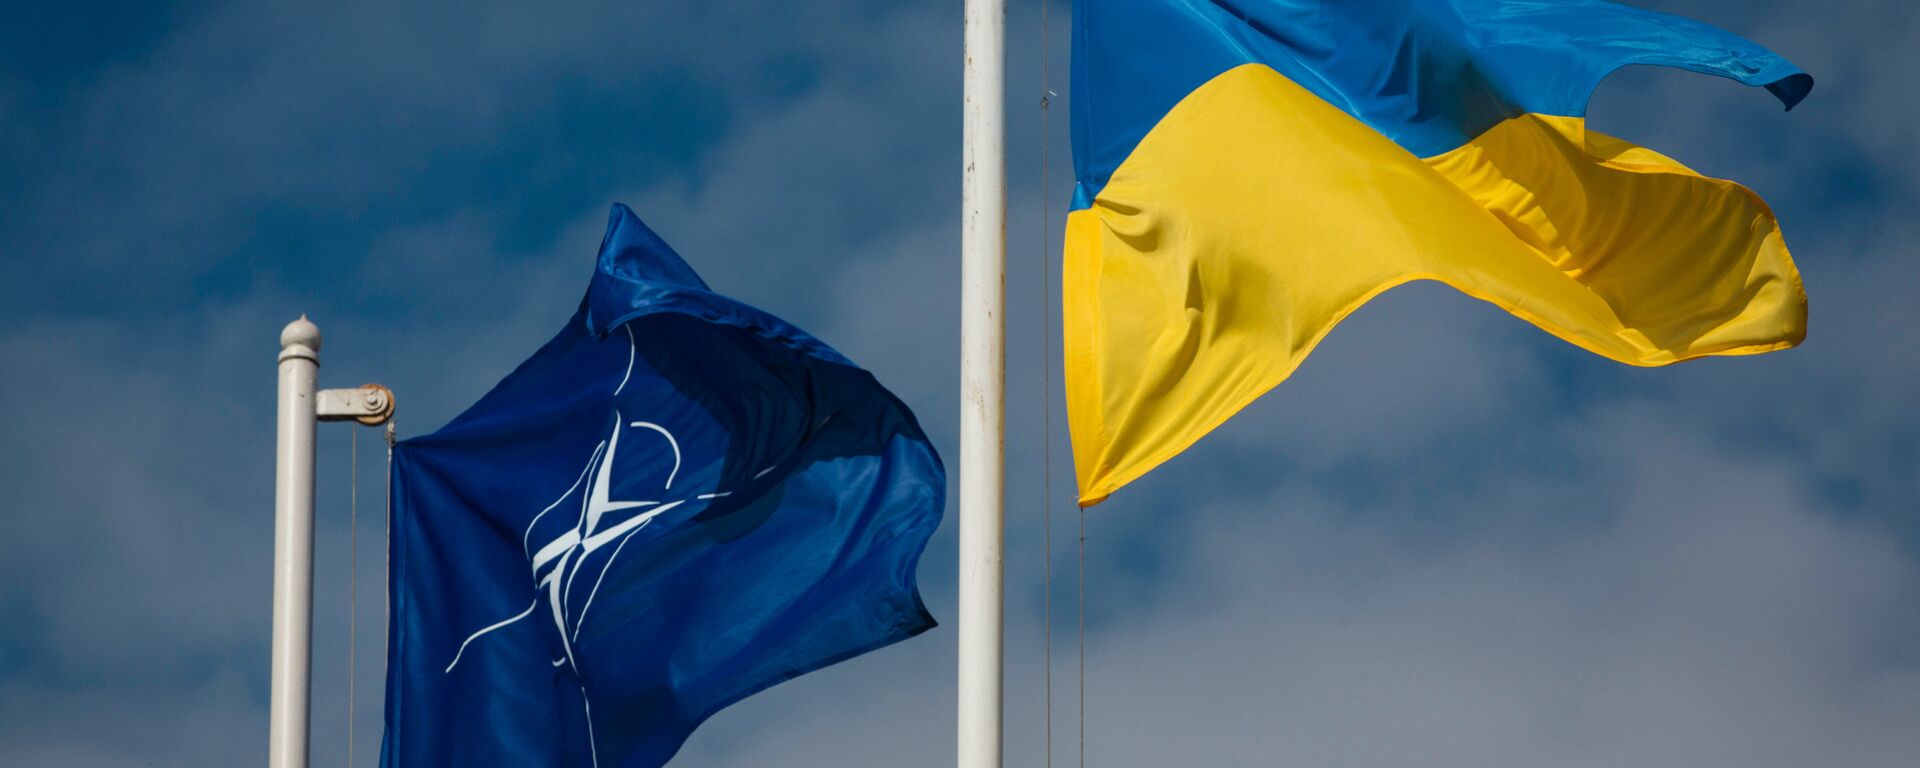 Национальный флаг Украины и флаг Организации Североатлантического договора (НАТО) - Sputnik Ўзбекистон, 1920, 08.04.2021